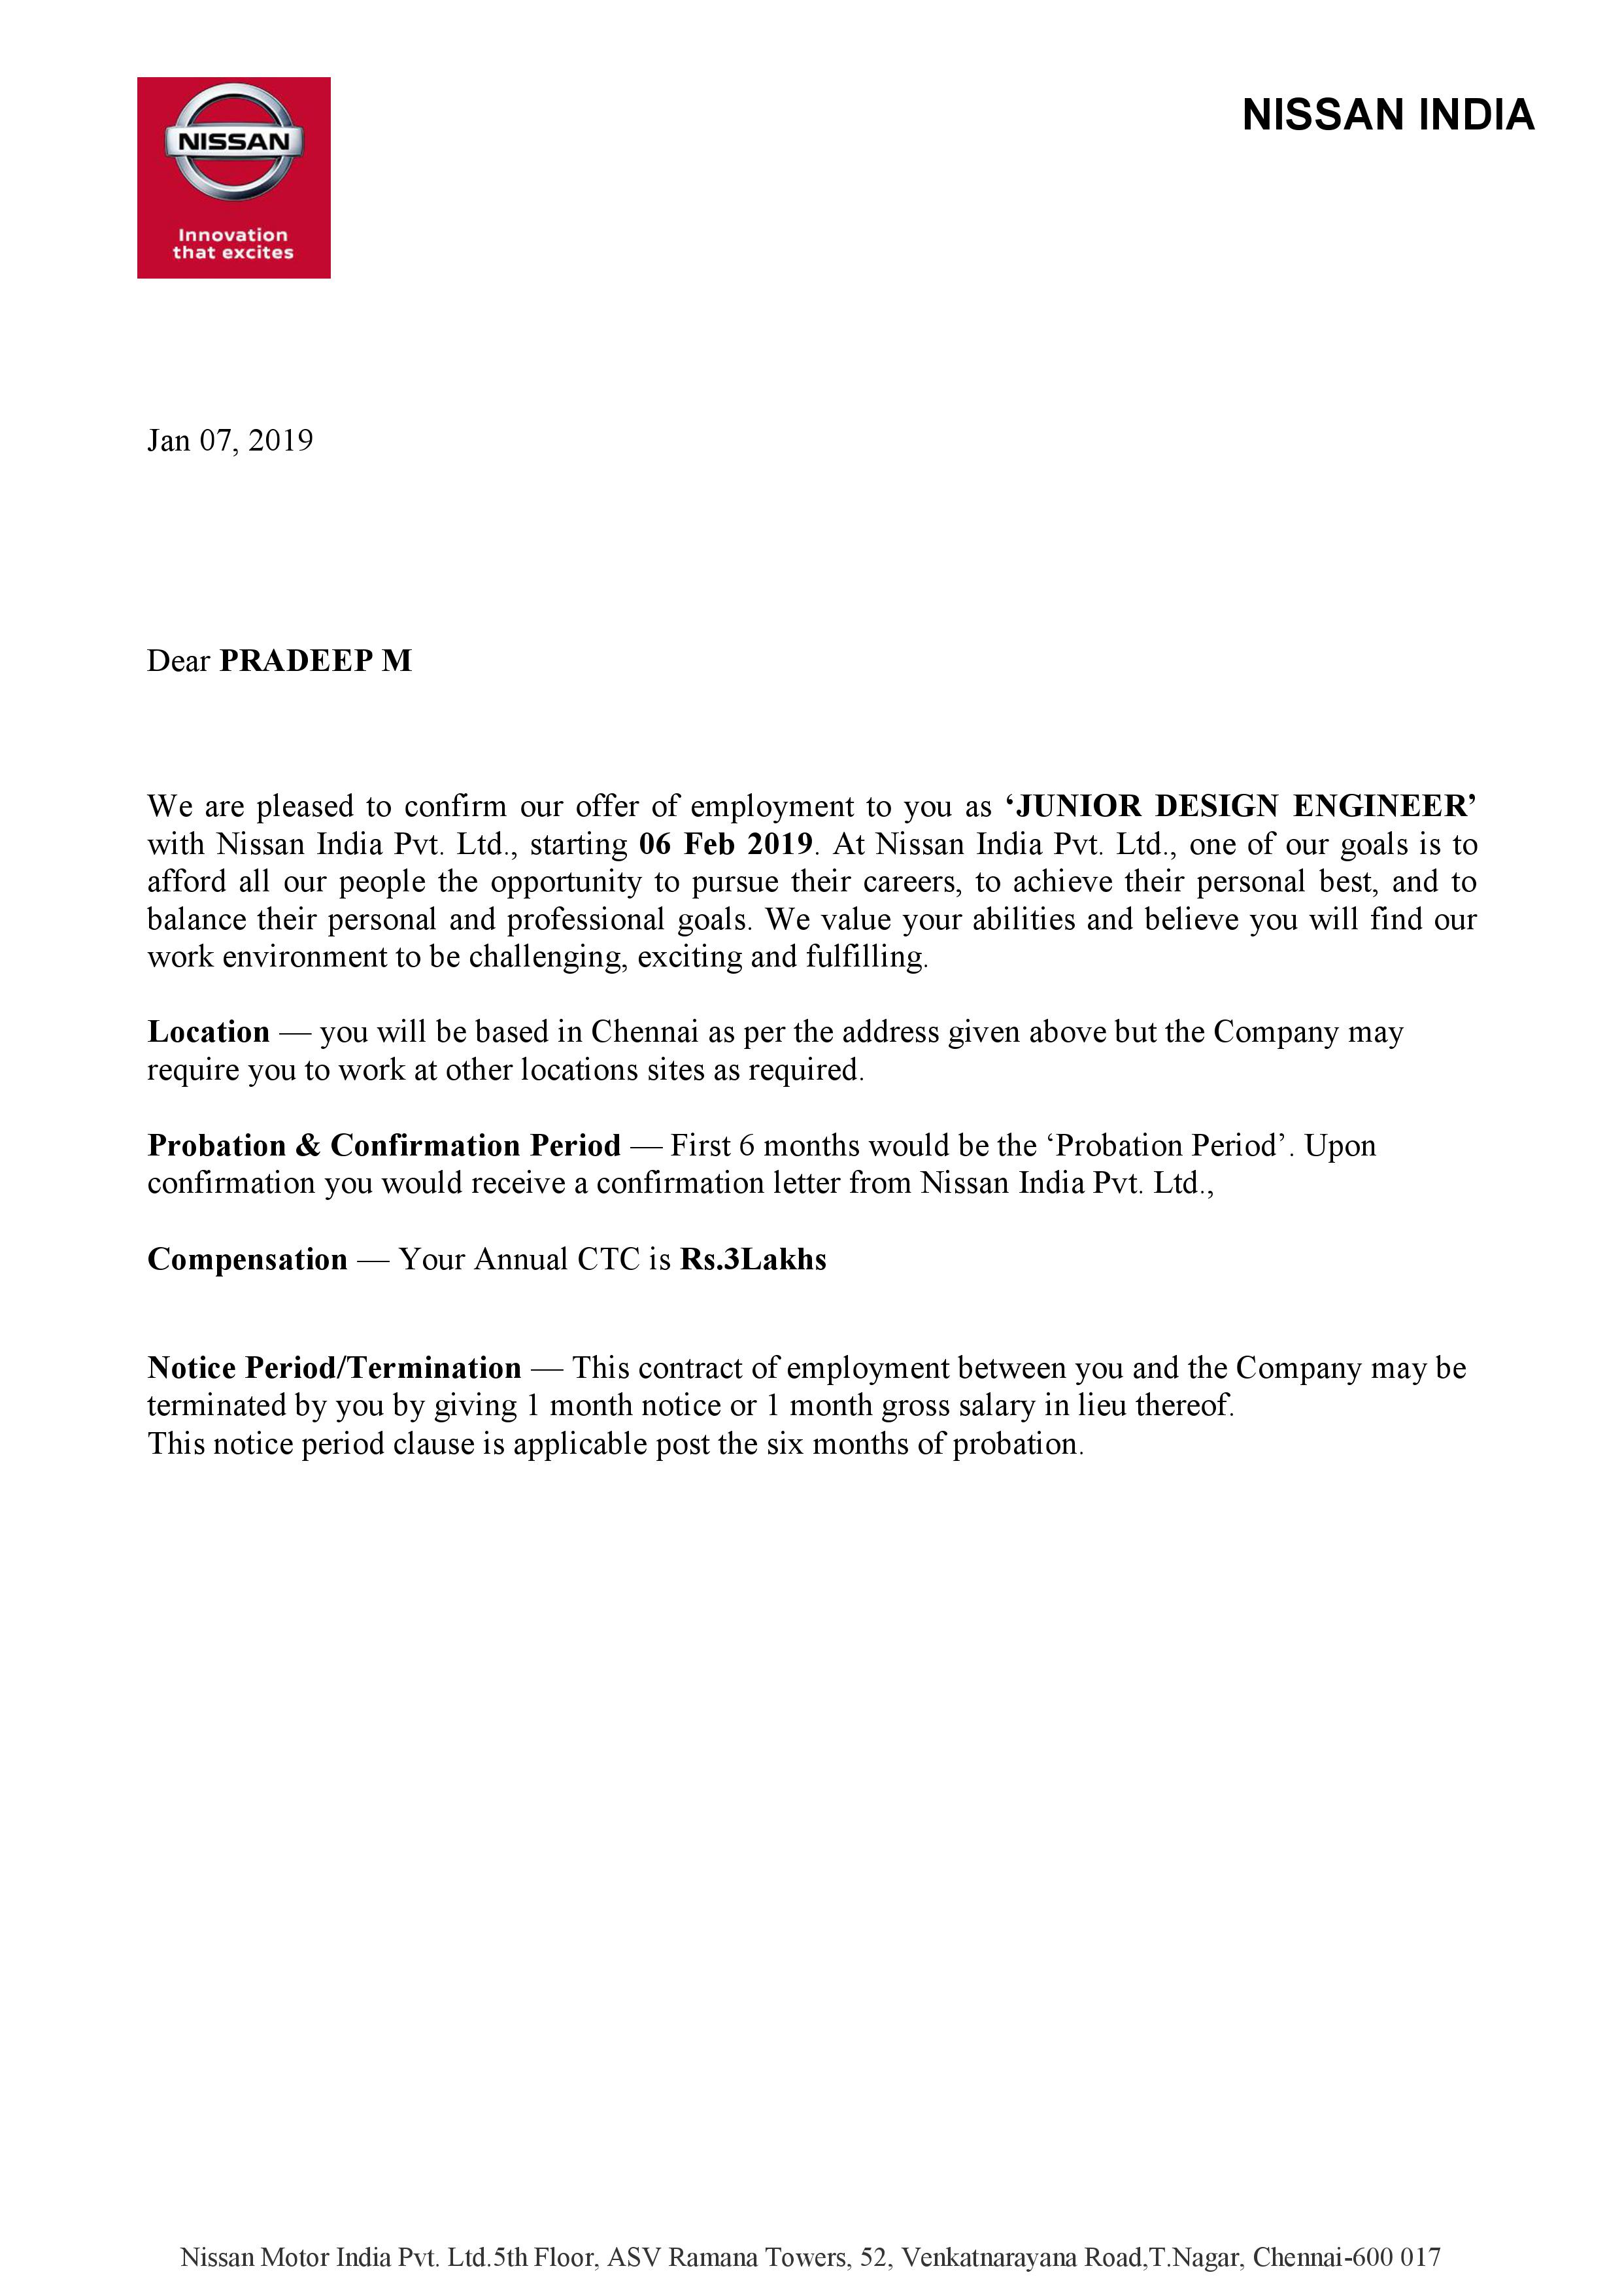 Pradeep Nissan Offer Letter_1